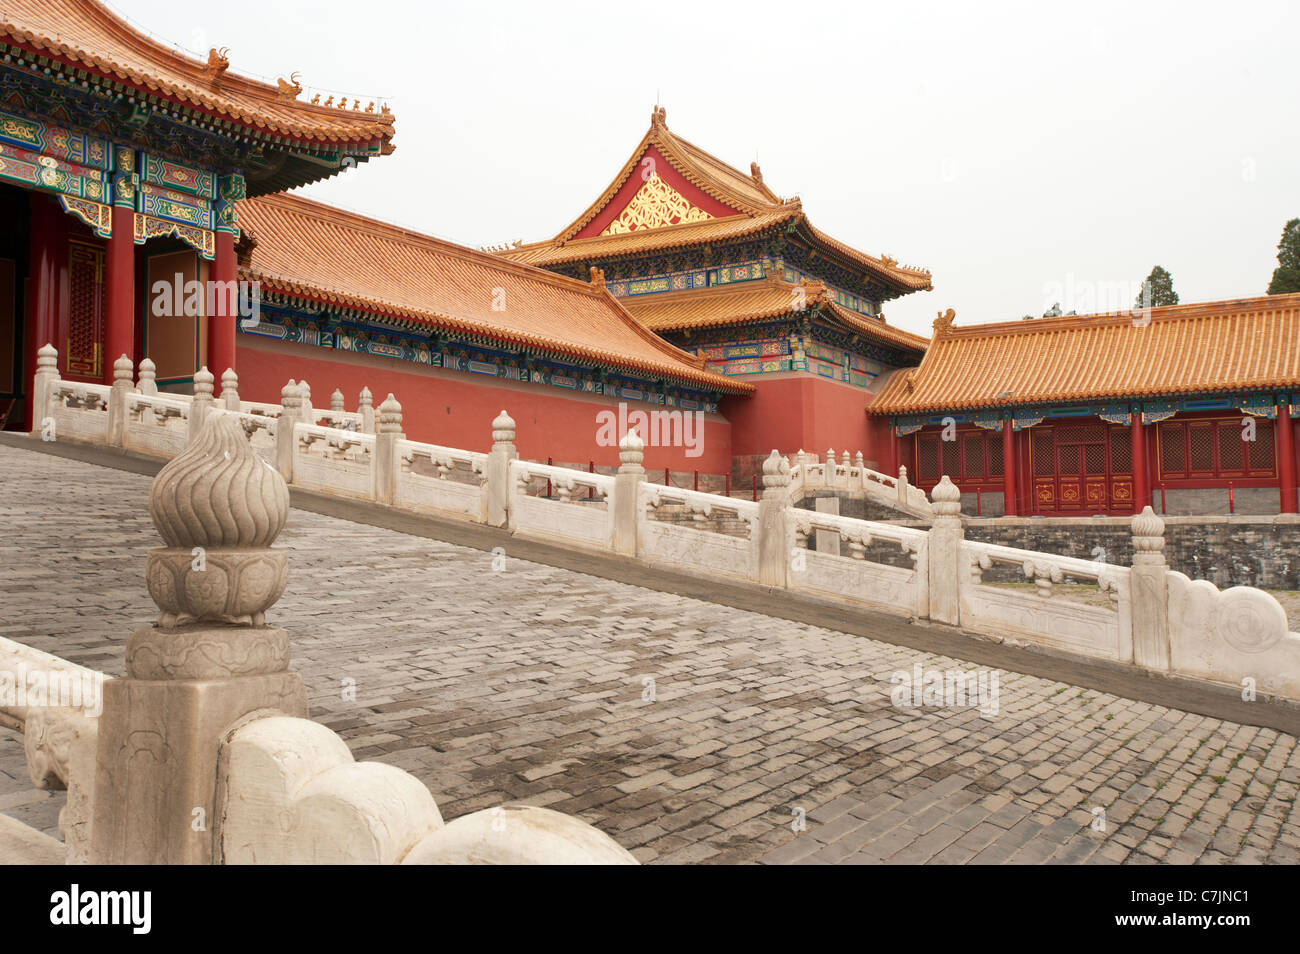 Palais impérial de la Cité Interdite de Pékin Pékin retraite paisible Jardins du Palais de Chine Beijing's Summer Palace Museum center Banque D'Images